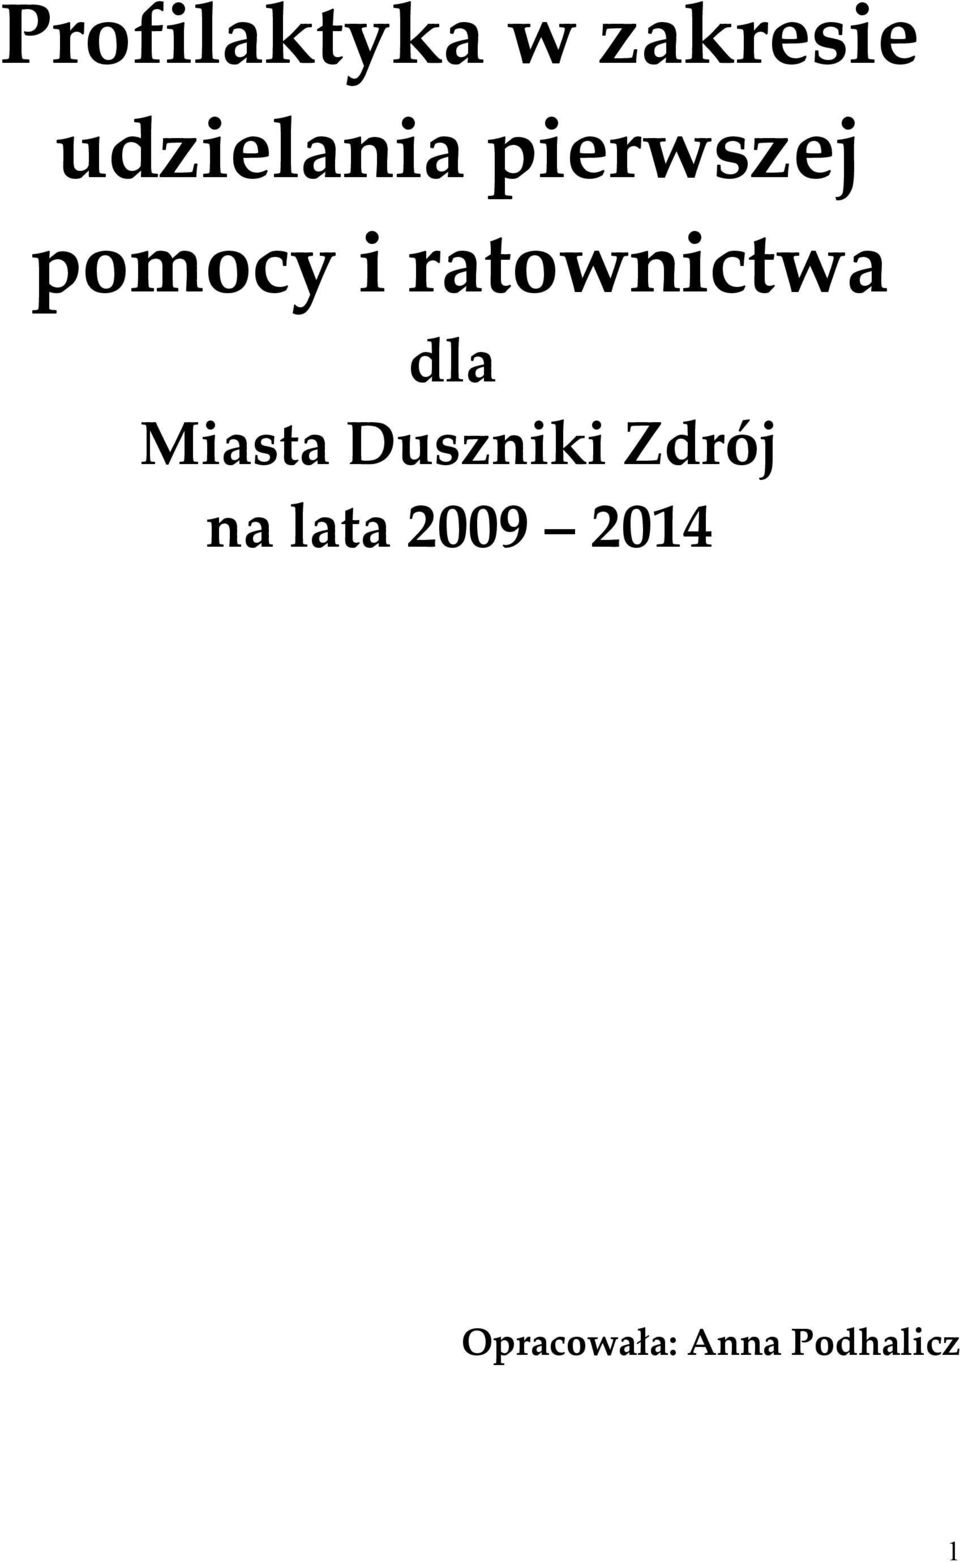 Miasta Duszniki Zdrój na lata 2009